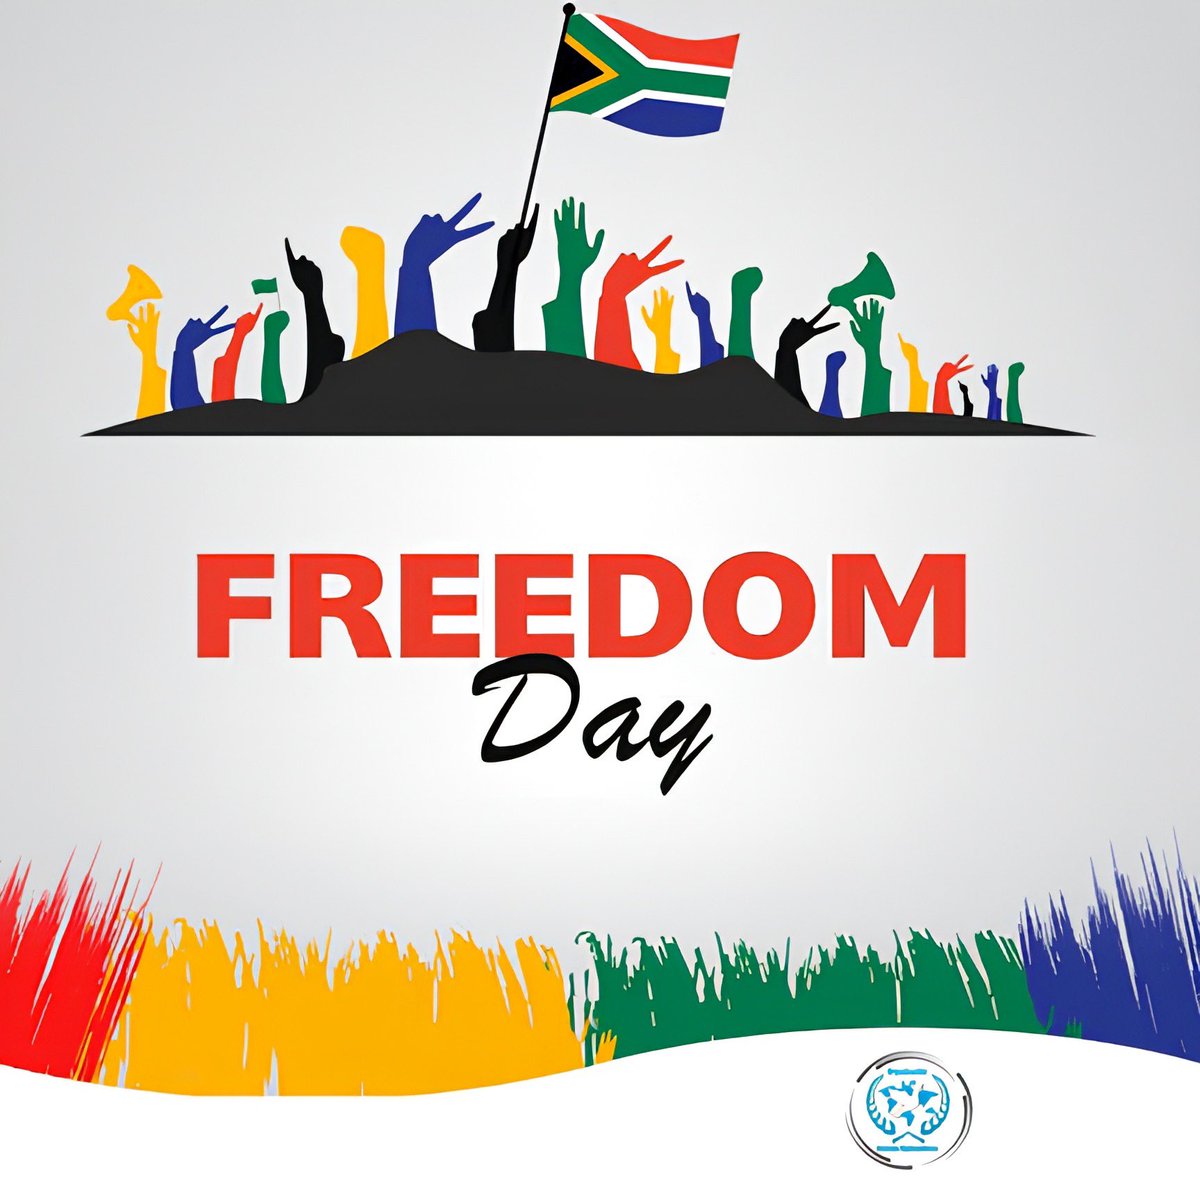 Hoy en Sudáfrica es Día de la Libertad es para celebrar la democracia y honrar a los héroes que lideraron la lucha contra el colonialismo y el apartheid. Hoy nos unimos con el pueblo sudafricano de todo el mundo para conmemorar el 30° Día de la Libertad de Sudáfrica 🇿🇦.